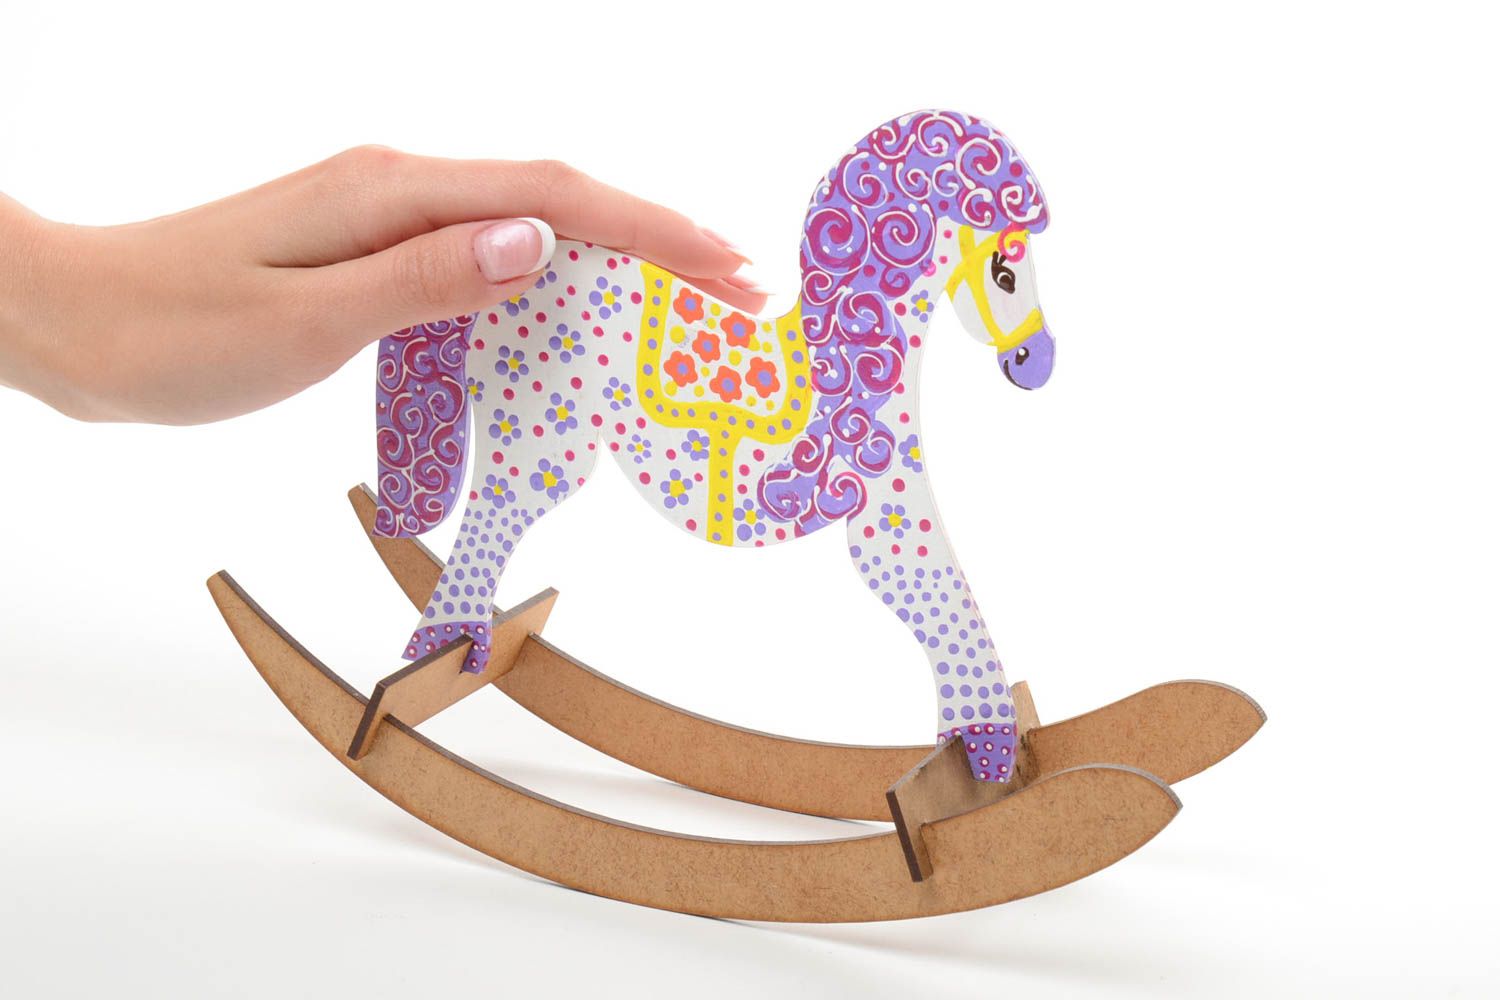 Spielzeug Pferd Schaukel aus Holz mit Acrylfarben bemalt gepunktet handmade foto 5